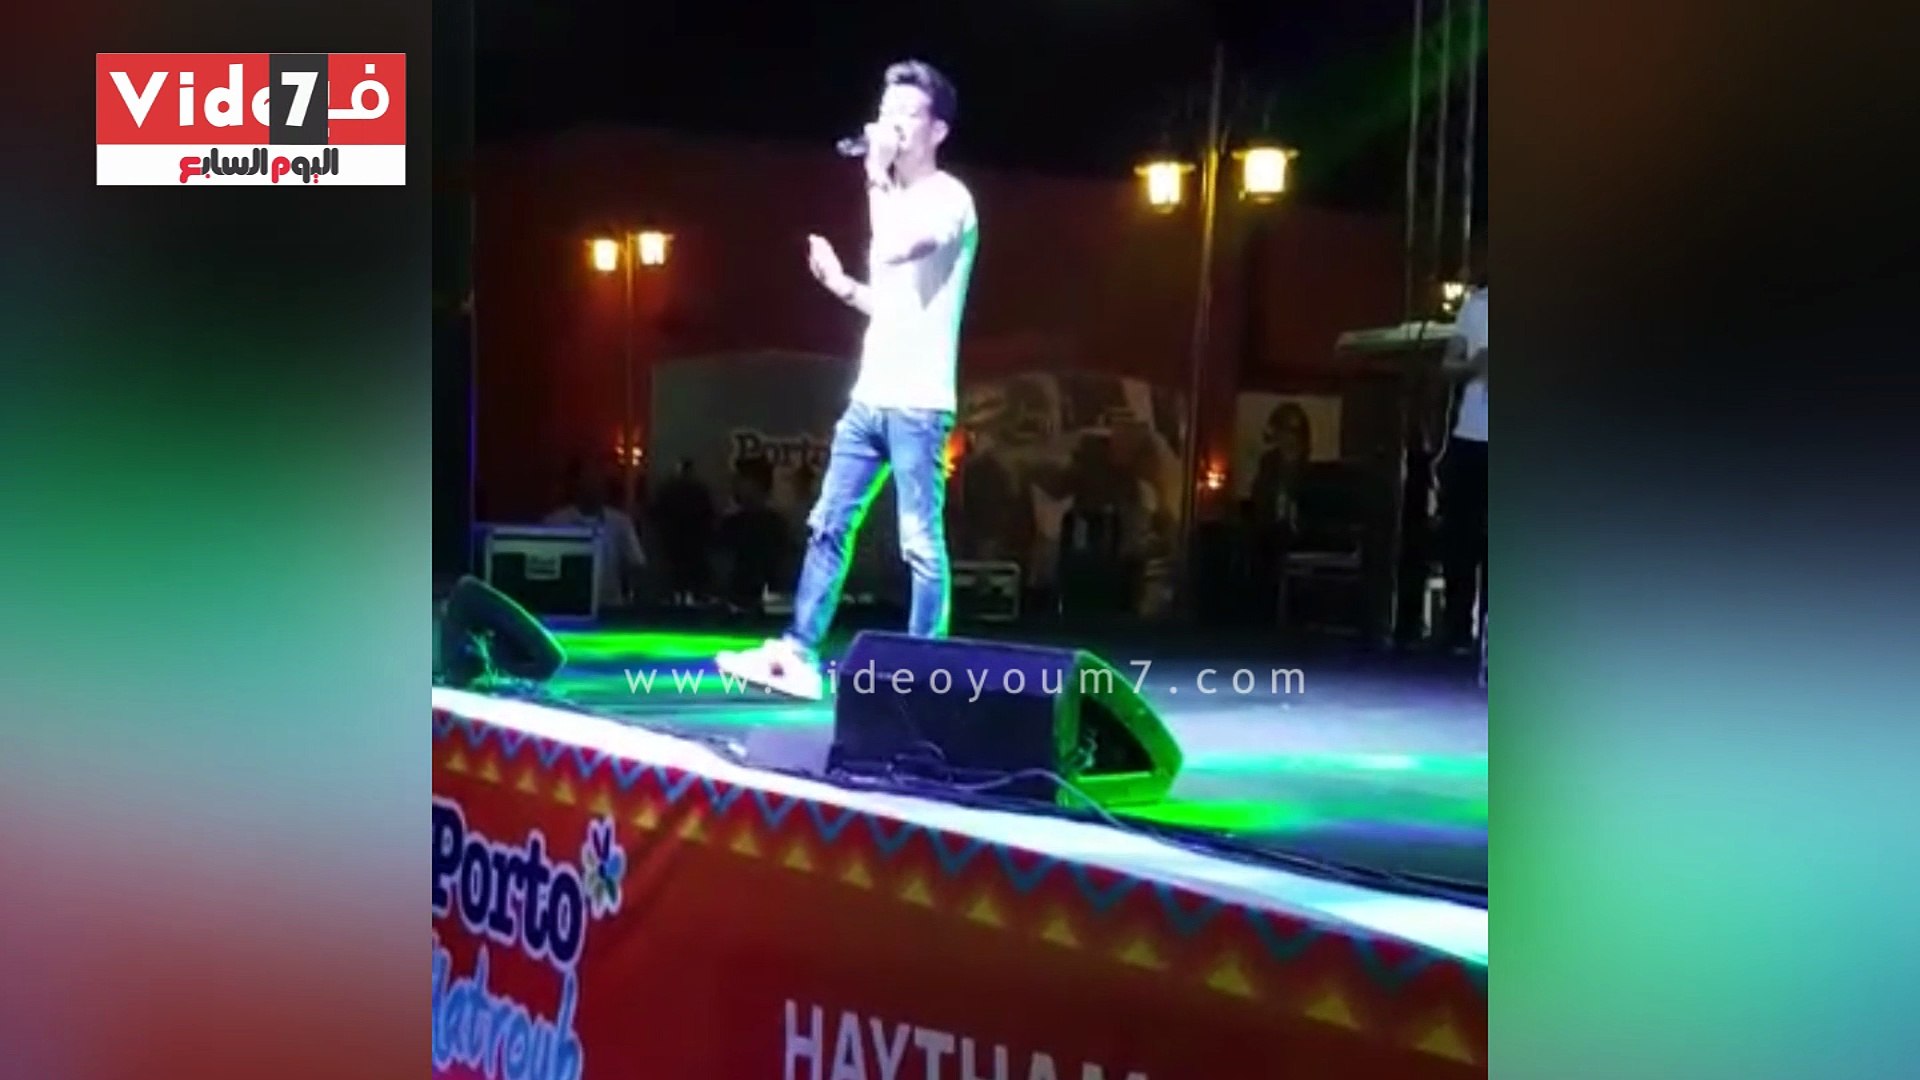 هيثم شاكر يقدم أغنية من ألبومه الجديد "مفيش بعد بينسى" - فيديو Dailymotion